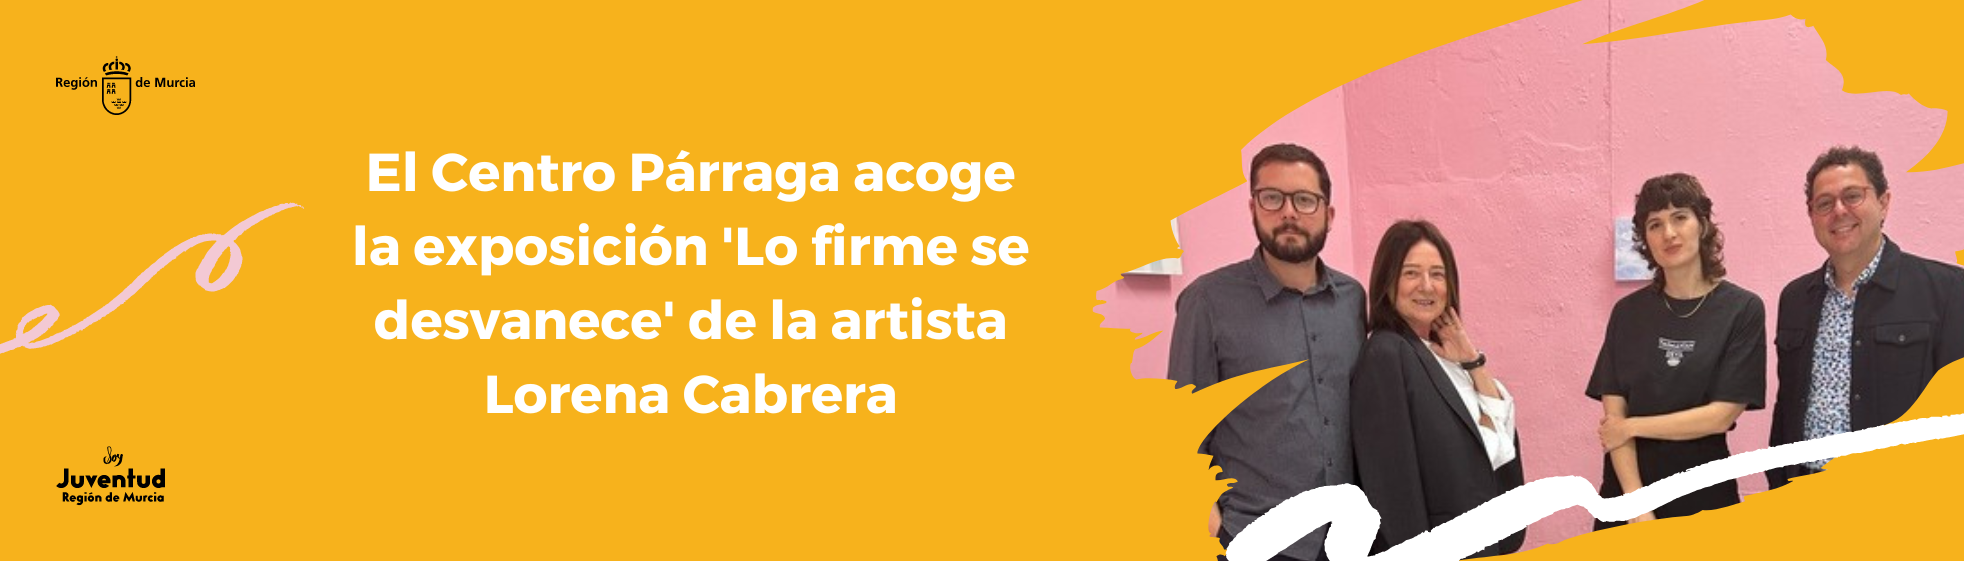 El Centro Párraga acoge la exposición 'Lo firme se desvanece' de la artista Lorena Cabrera